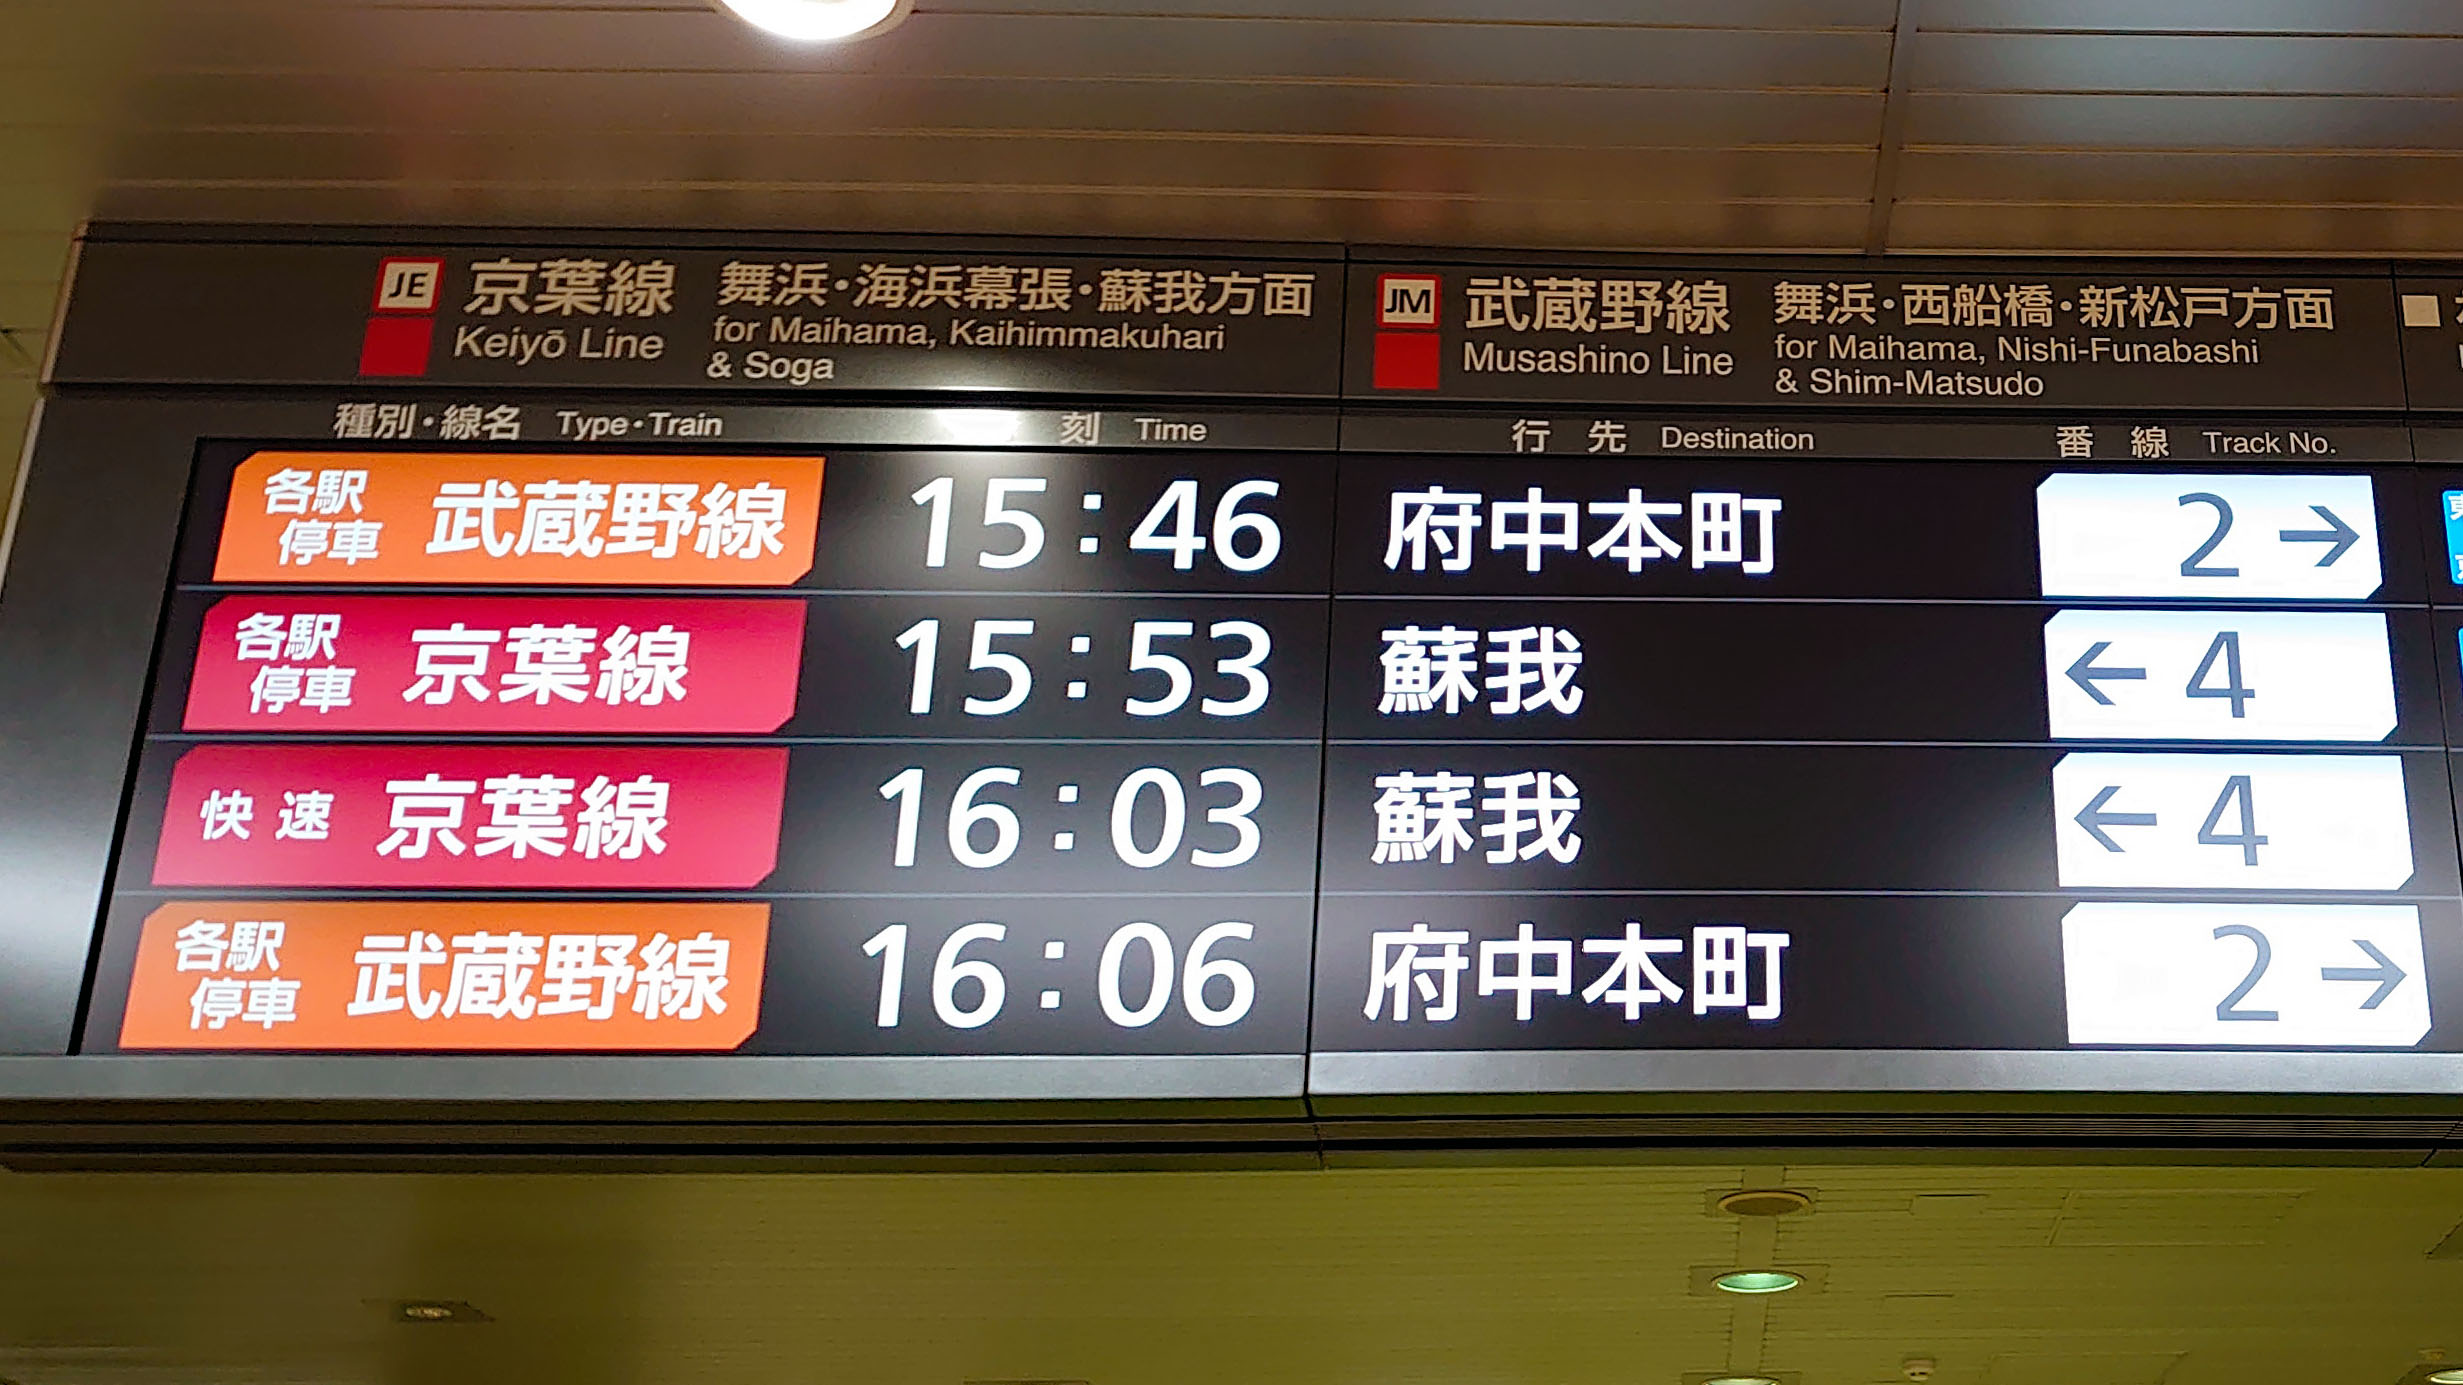 コロナ禍の中にjr京葉線東京駅の電光掲示板が最新の機器に更新 ビビット 14